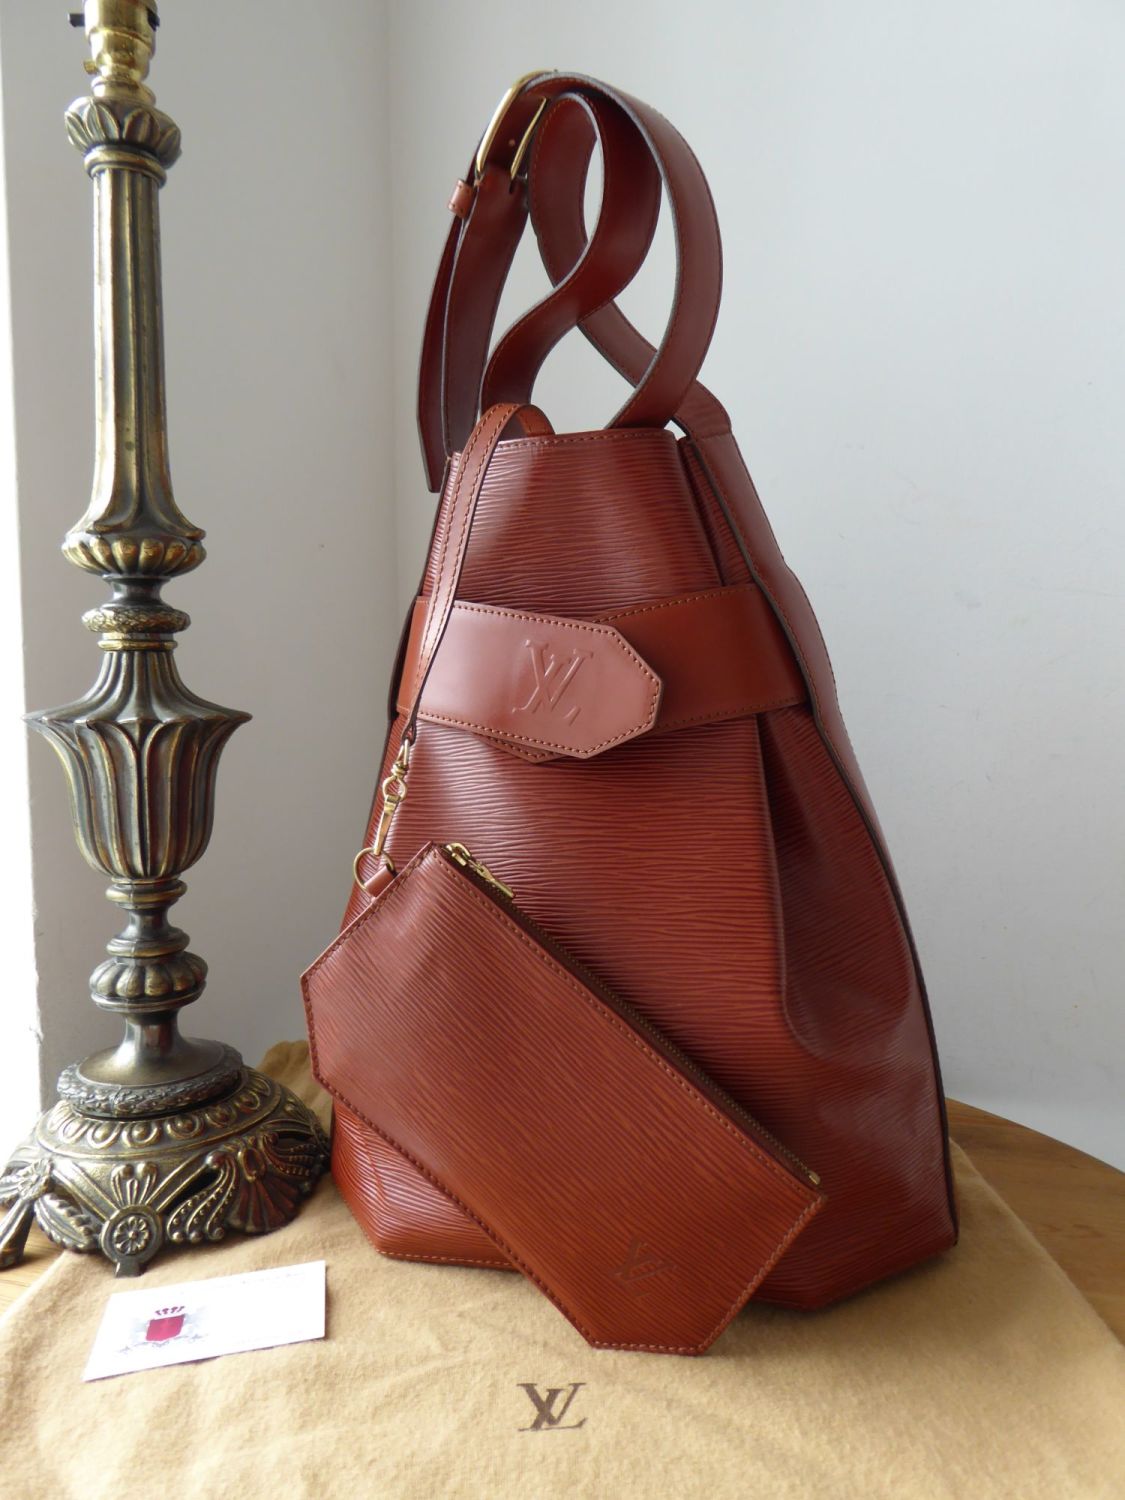 Louis-Vuitton-Epi-Sac-D'epaule-GM-Bucket-Bag-Kenya-Brown-M80193